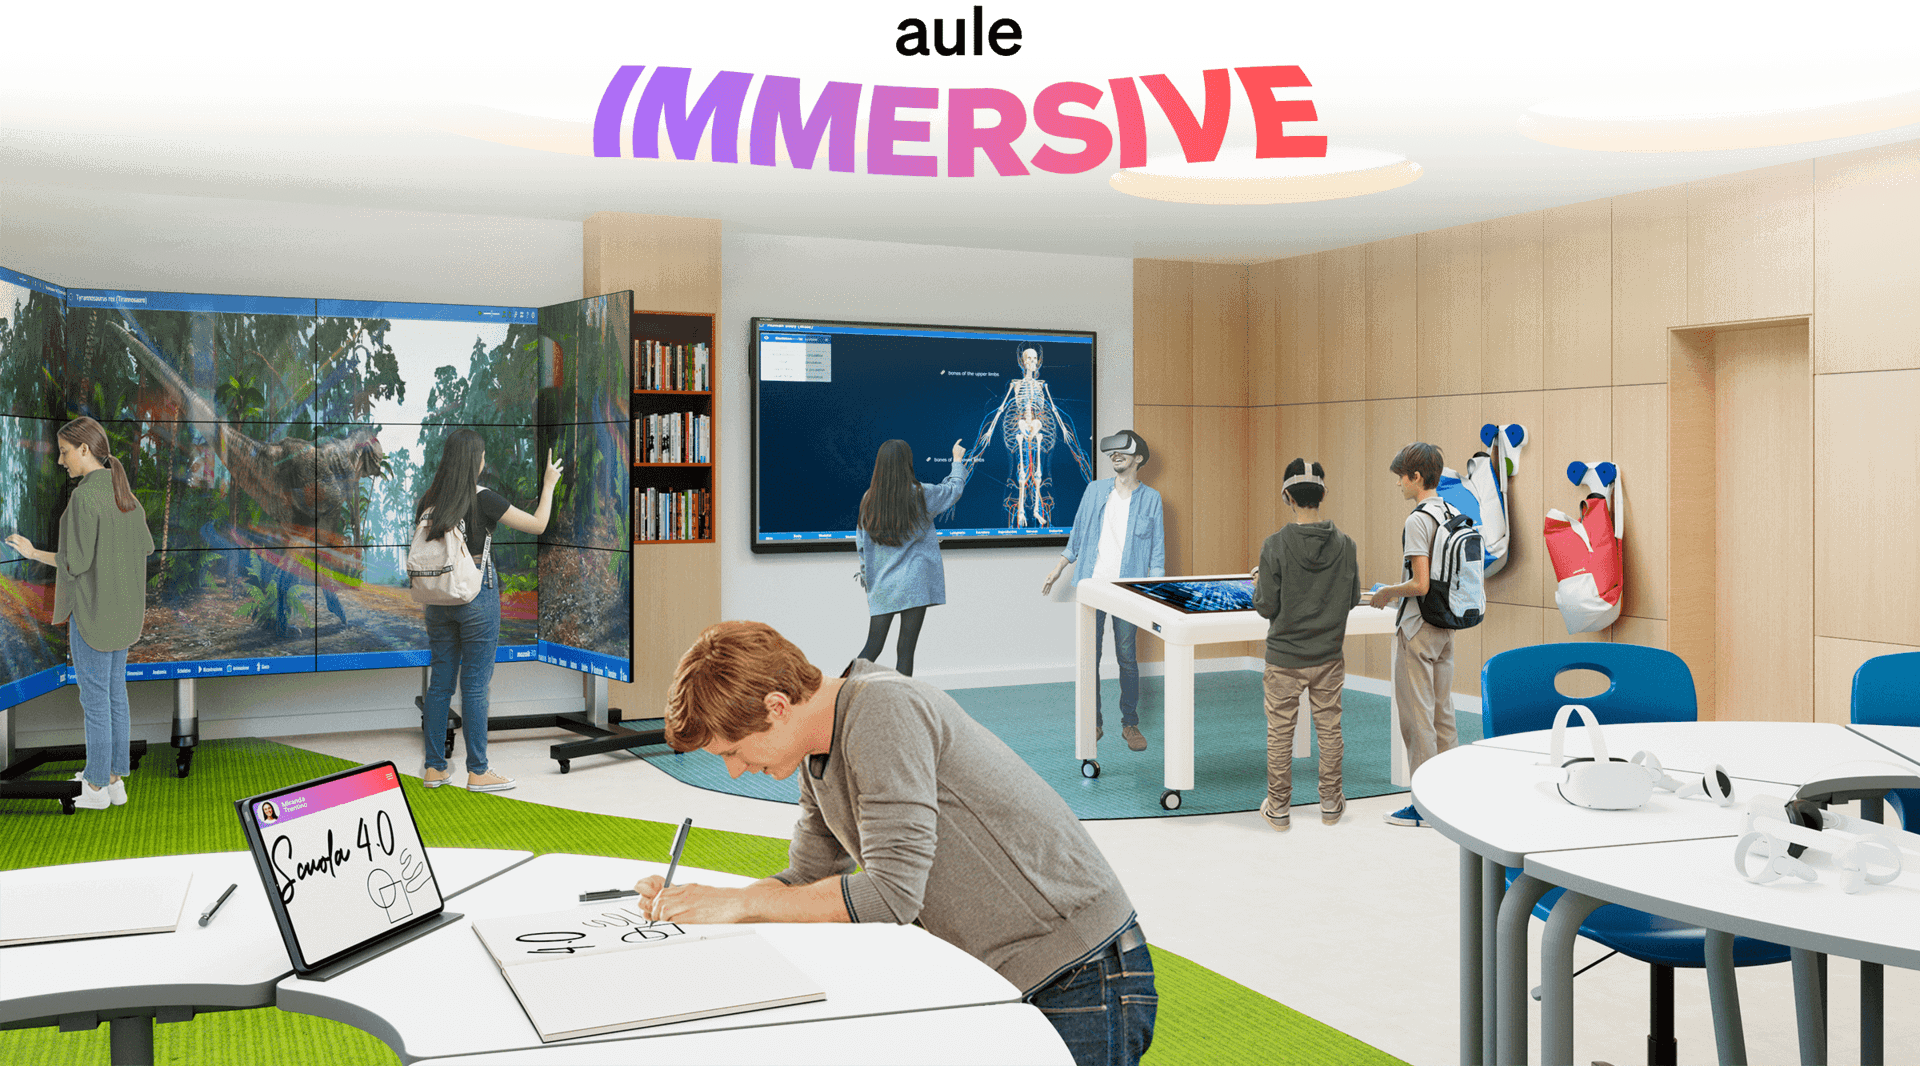 La scuola del futuro è digitale, interattiva & immersiva!